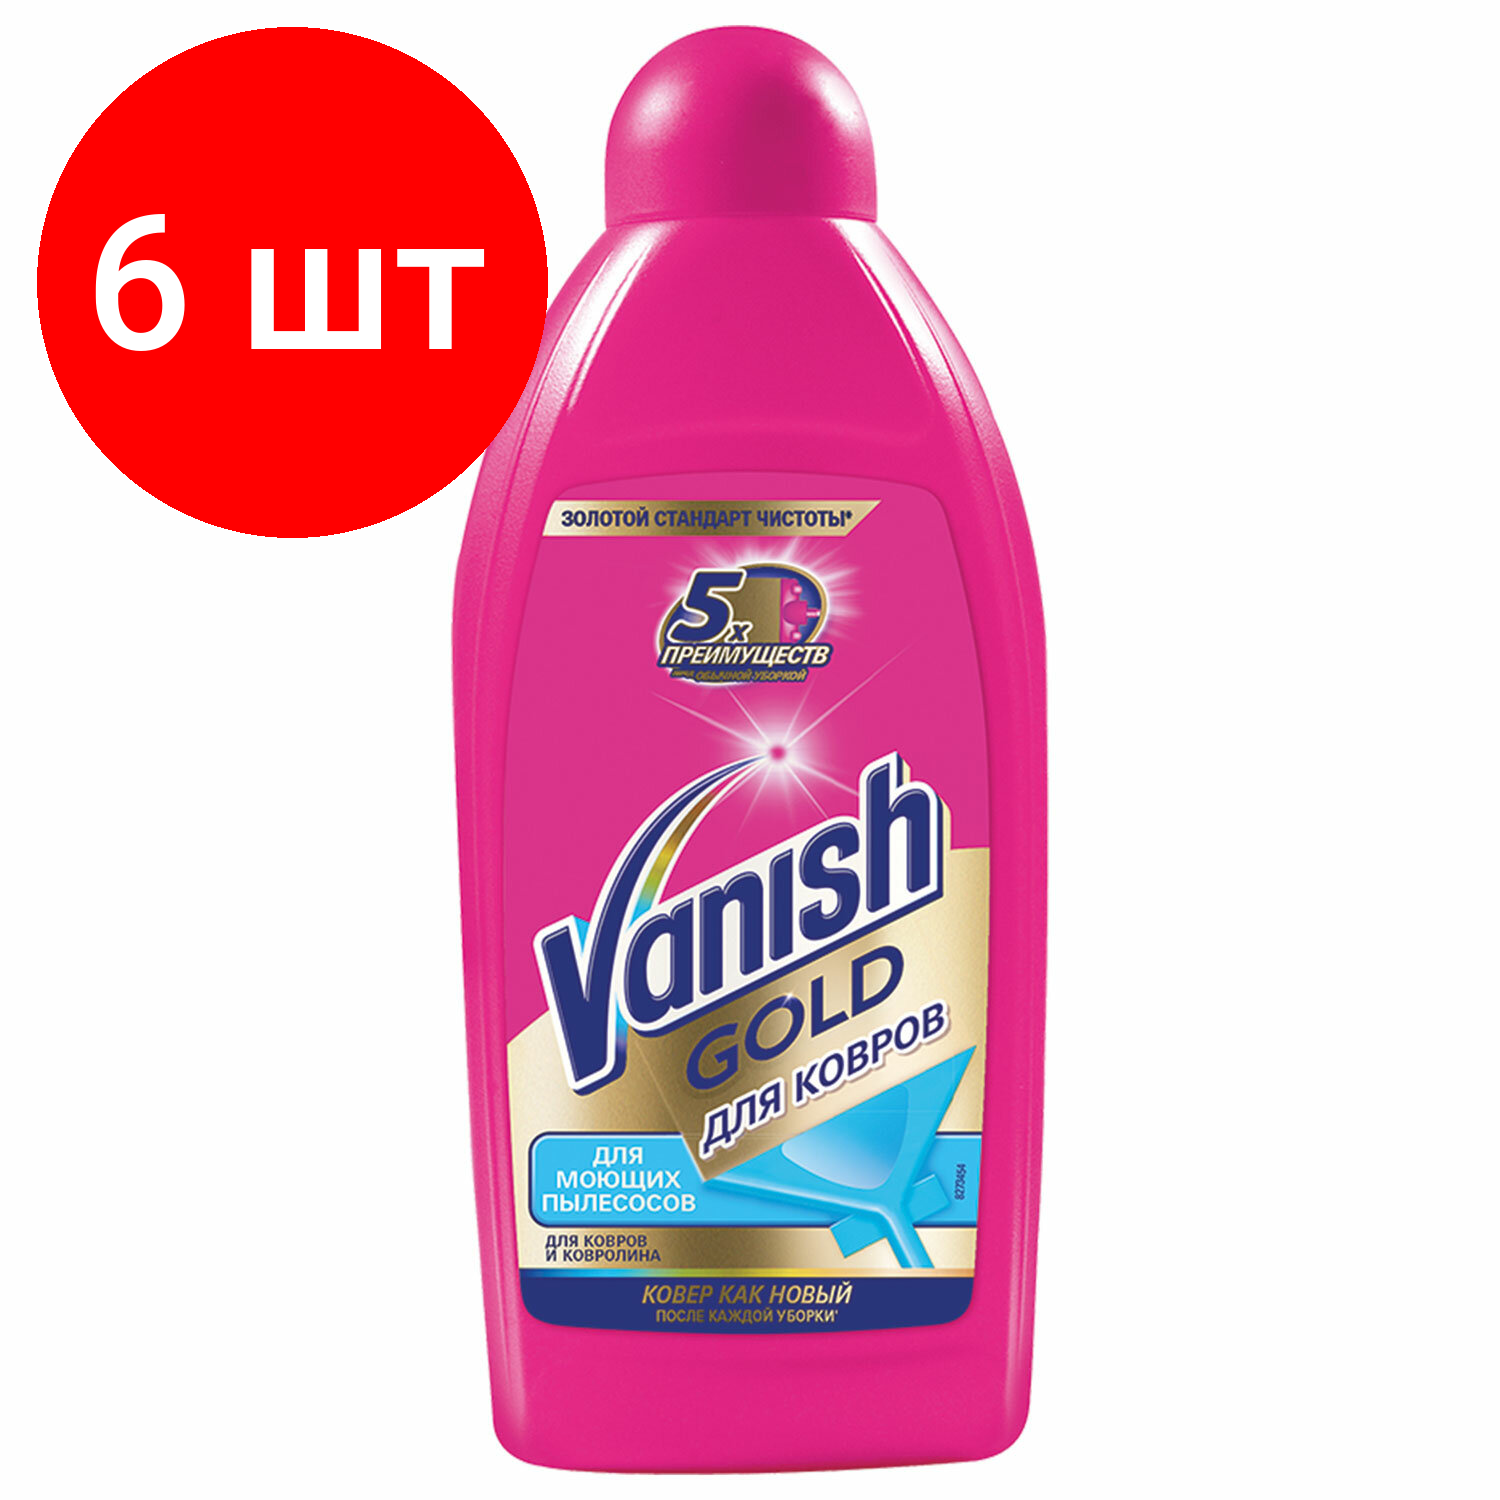 Комплект 5 шт Средство для чистки ковров 450 мл VANISH (Ваниш) GOLD для моющих пылесосов 3038214